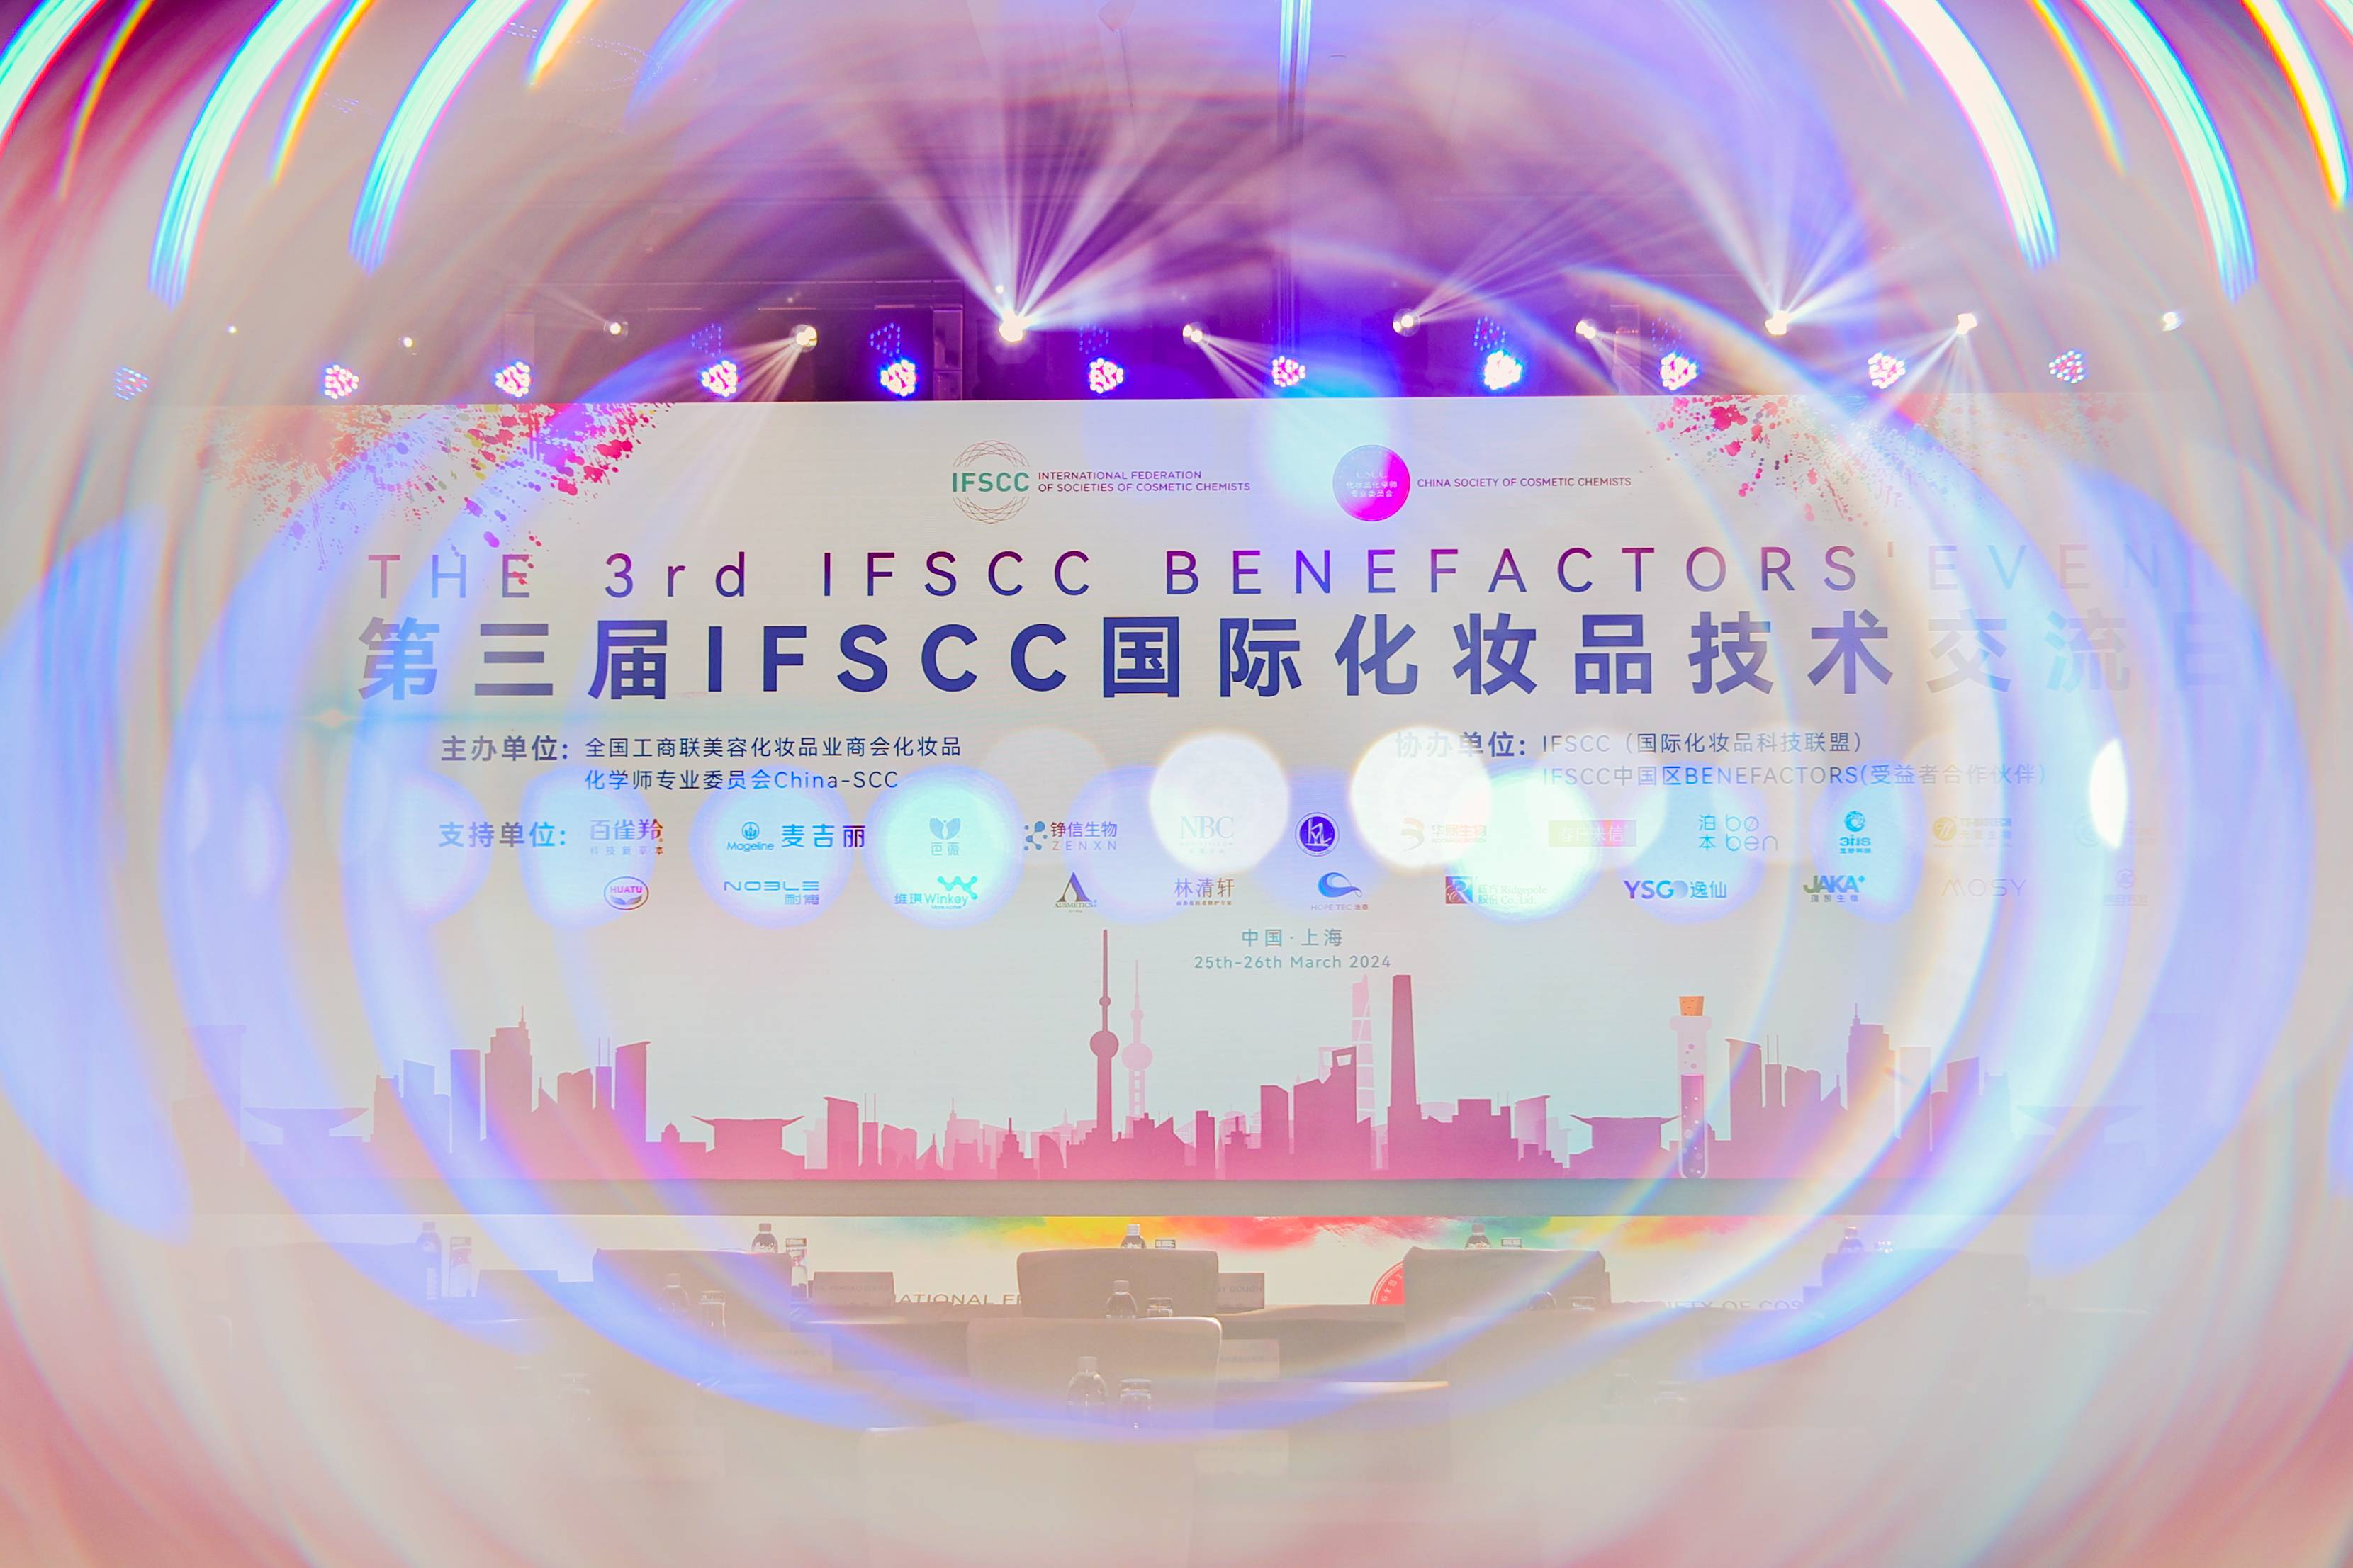 圆满落幕丨第三届IFSCC国际化妆品技术交流日The 3rd IFSCC Benefactors’ Event